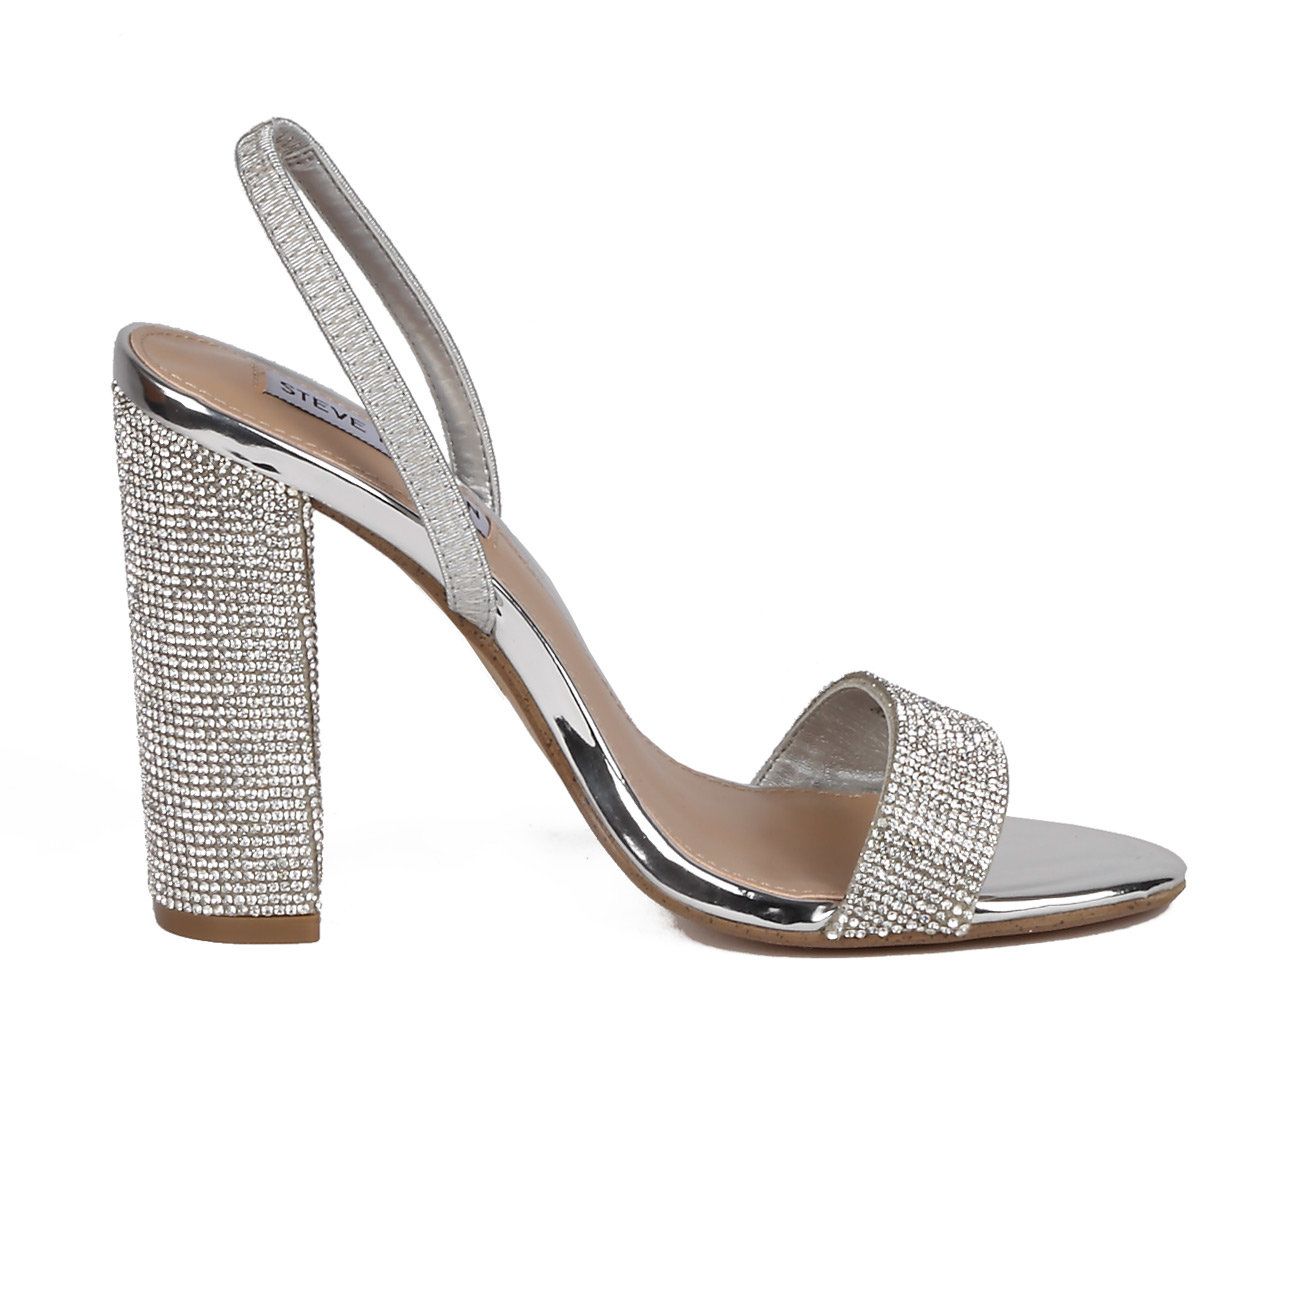 ONYX Sandali con tacco alto largo scarpe glitter argento donna 